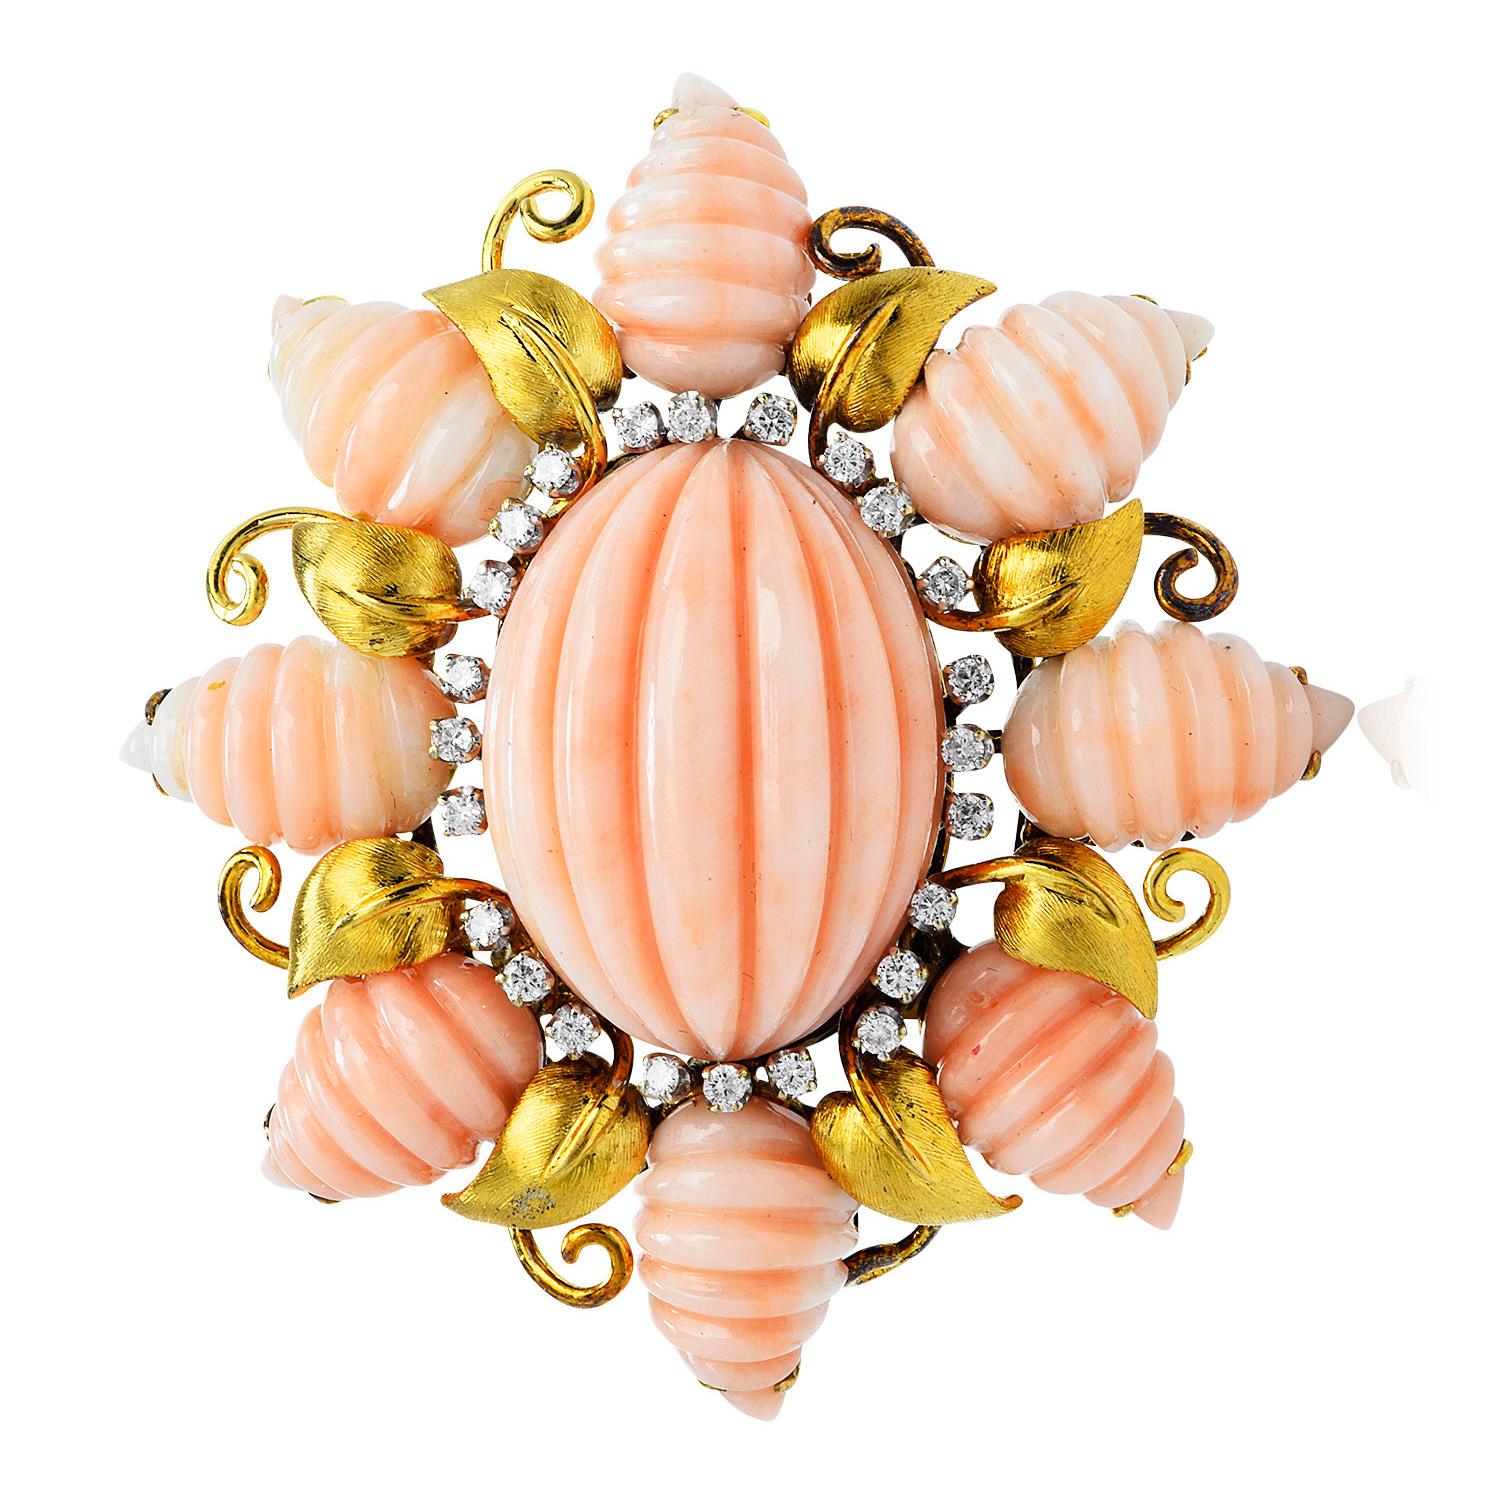 Avec un design texturé exquis de Trio, ces ravissantes pièces vintage en corail sculpté rose et diamant sont fabriquées en or jaune massif 18 carats.
Au centre se trouve un véritable corail rose cannelé ovale en cabochon, mesurant 27 mm x 22 mm x 14